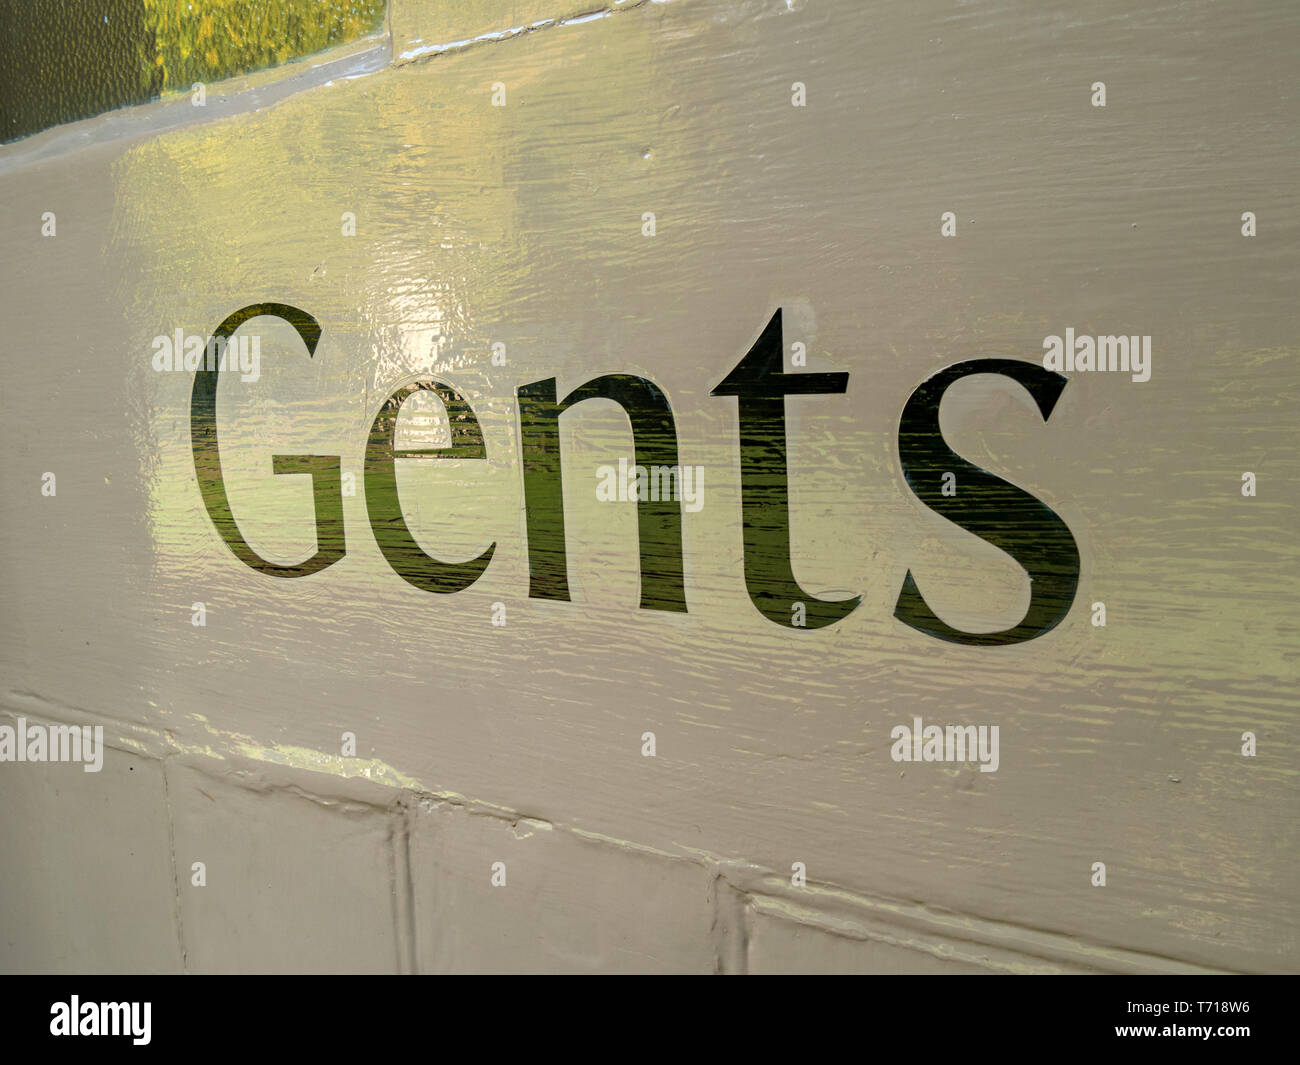 Detailaufnahme des frisch handbemalten Toilettenschilds von Gents, Großbritannien Stockfoto